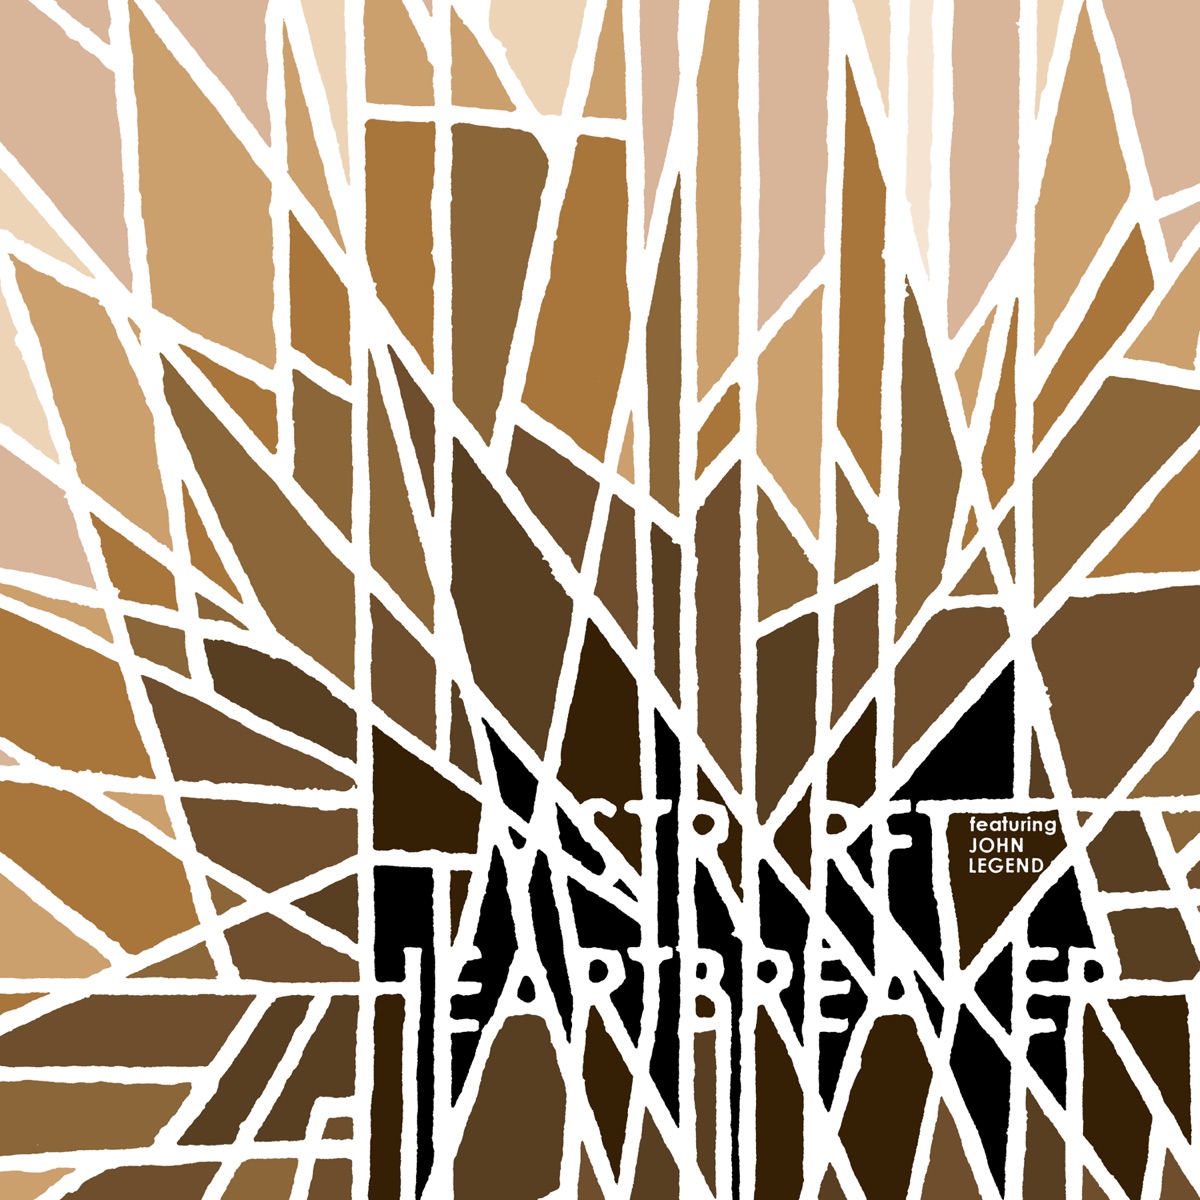 MSTRKRFT ft. featuring John Legend Heartbreaker (Laidback Luke Remix) cover artwork